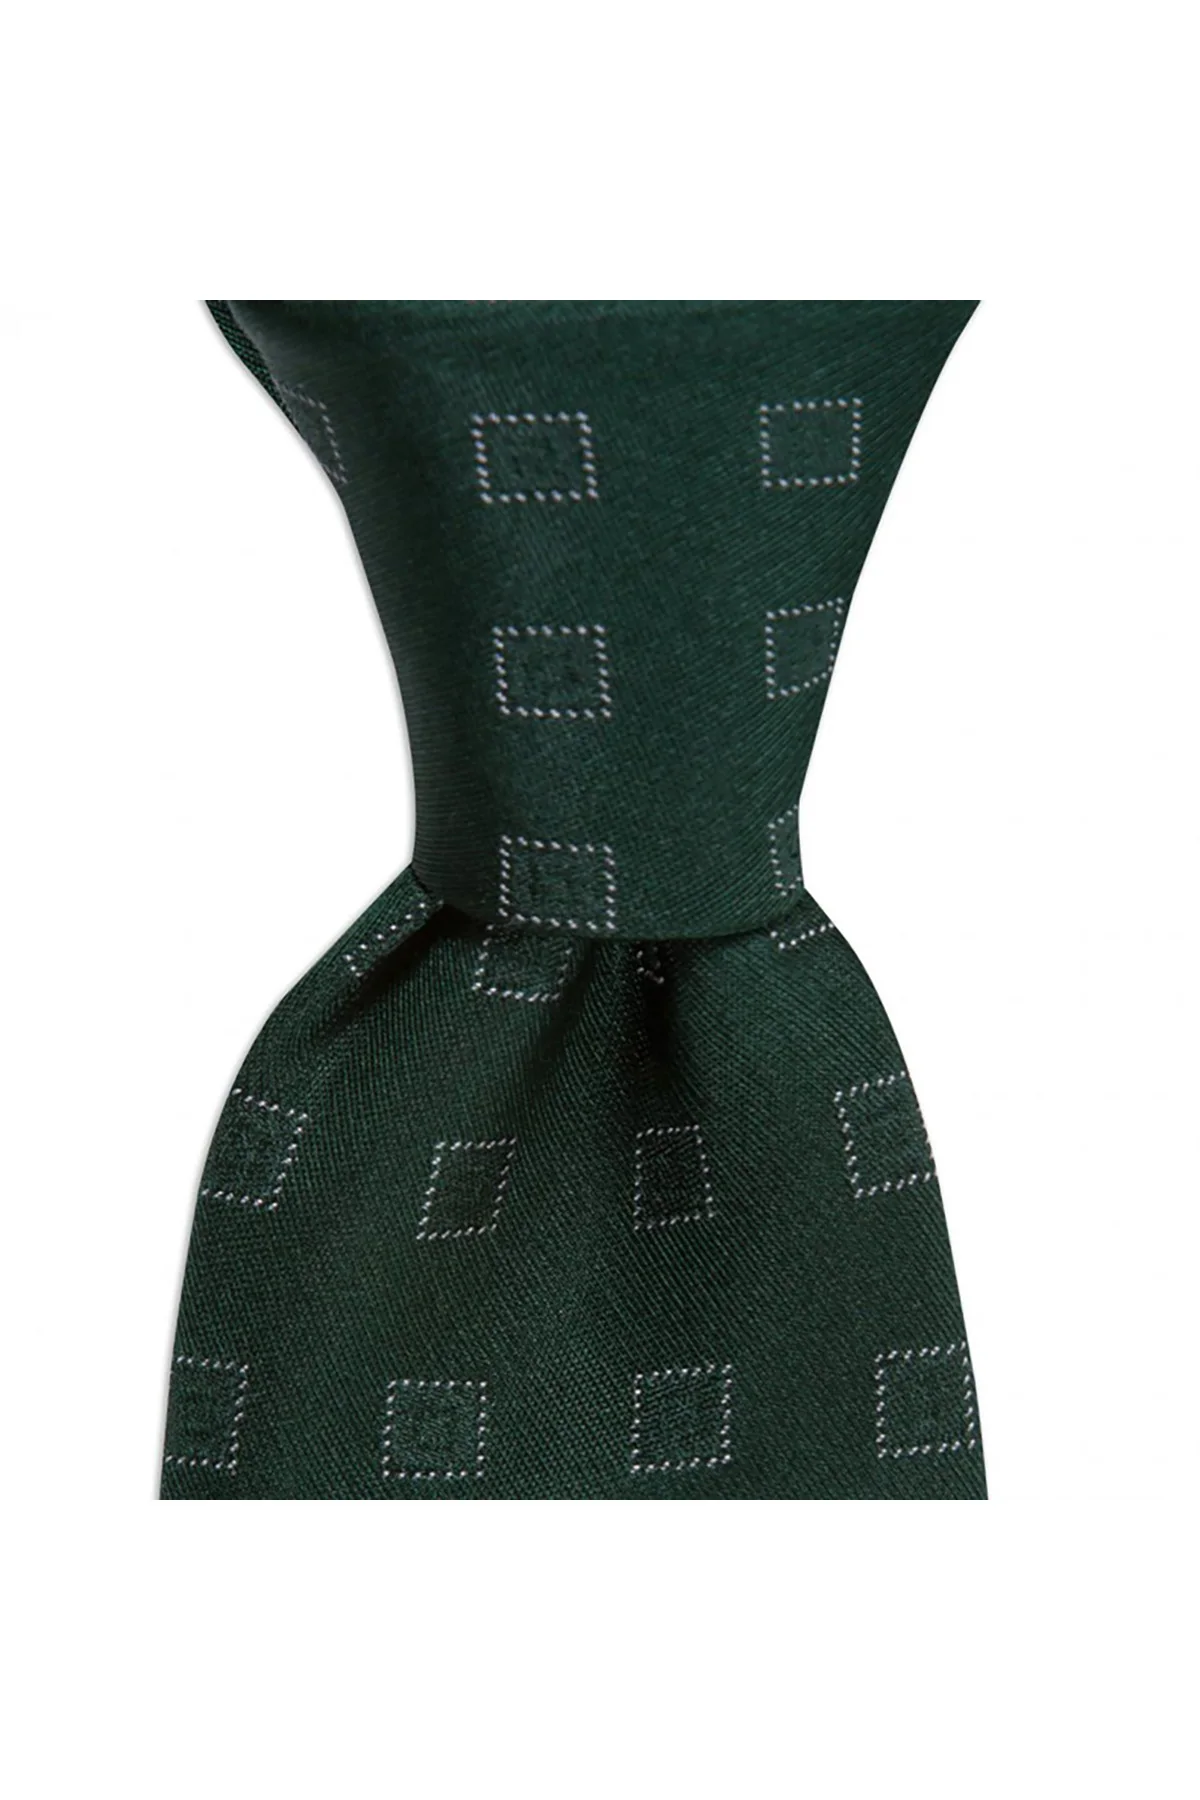 Мужской классический однотонный Шелковый галстук Сделано в Италии ширина 8 см